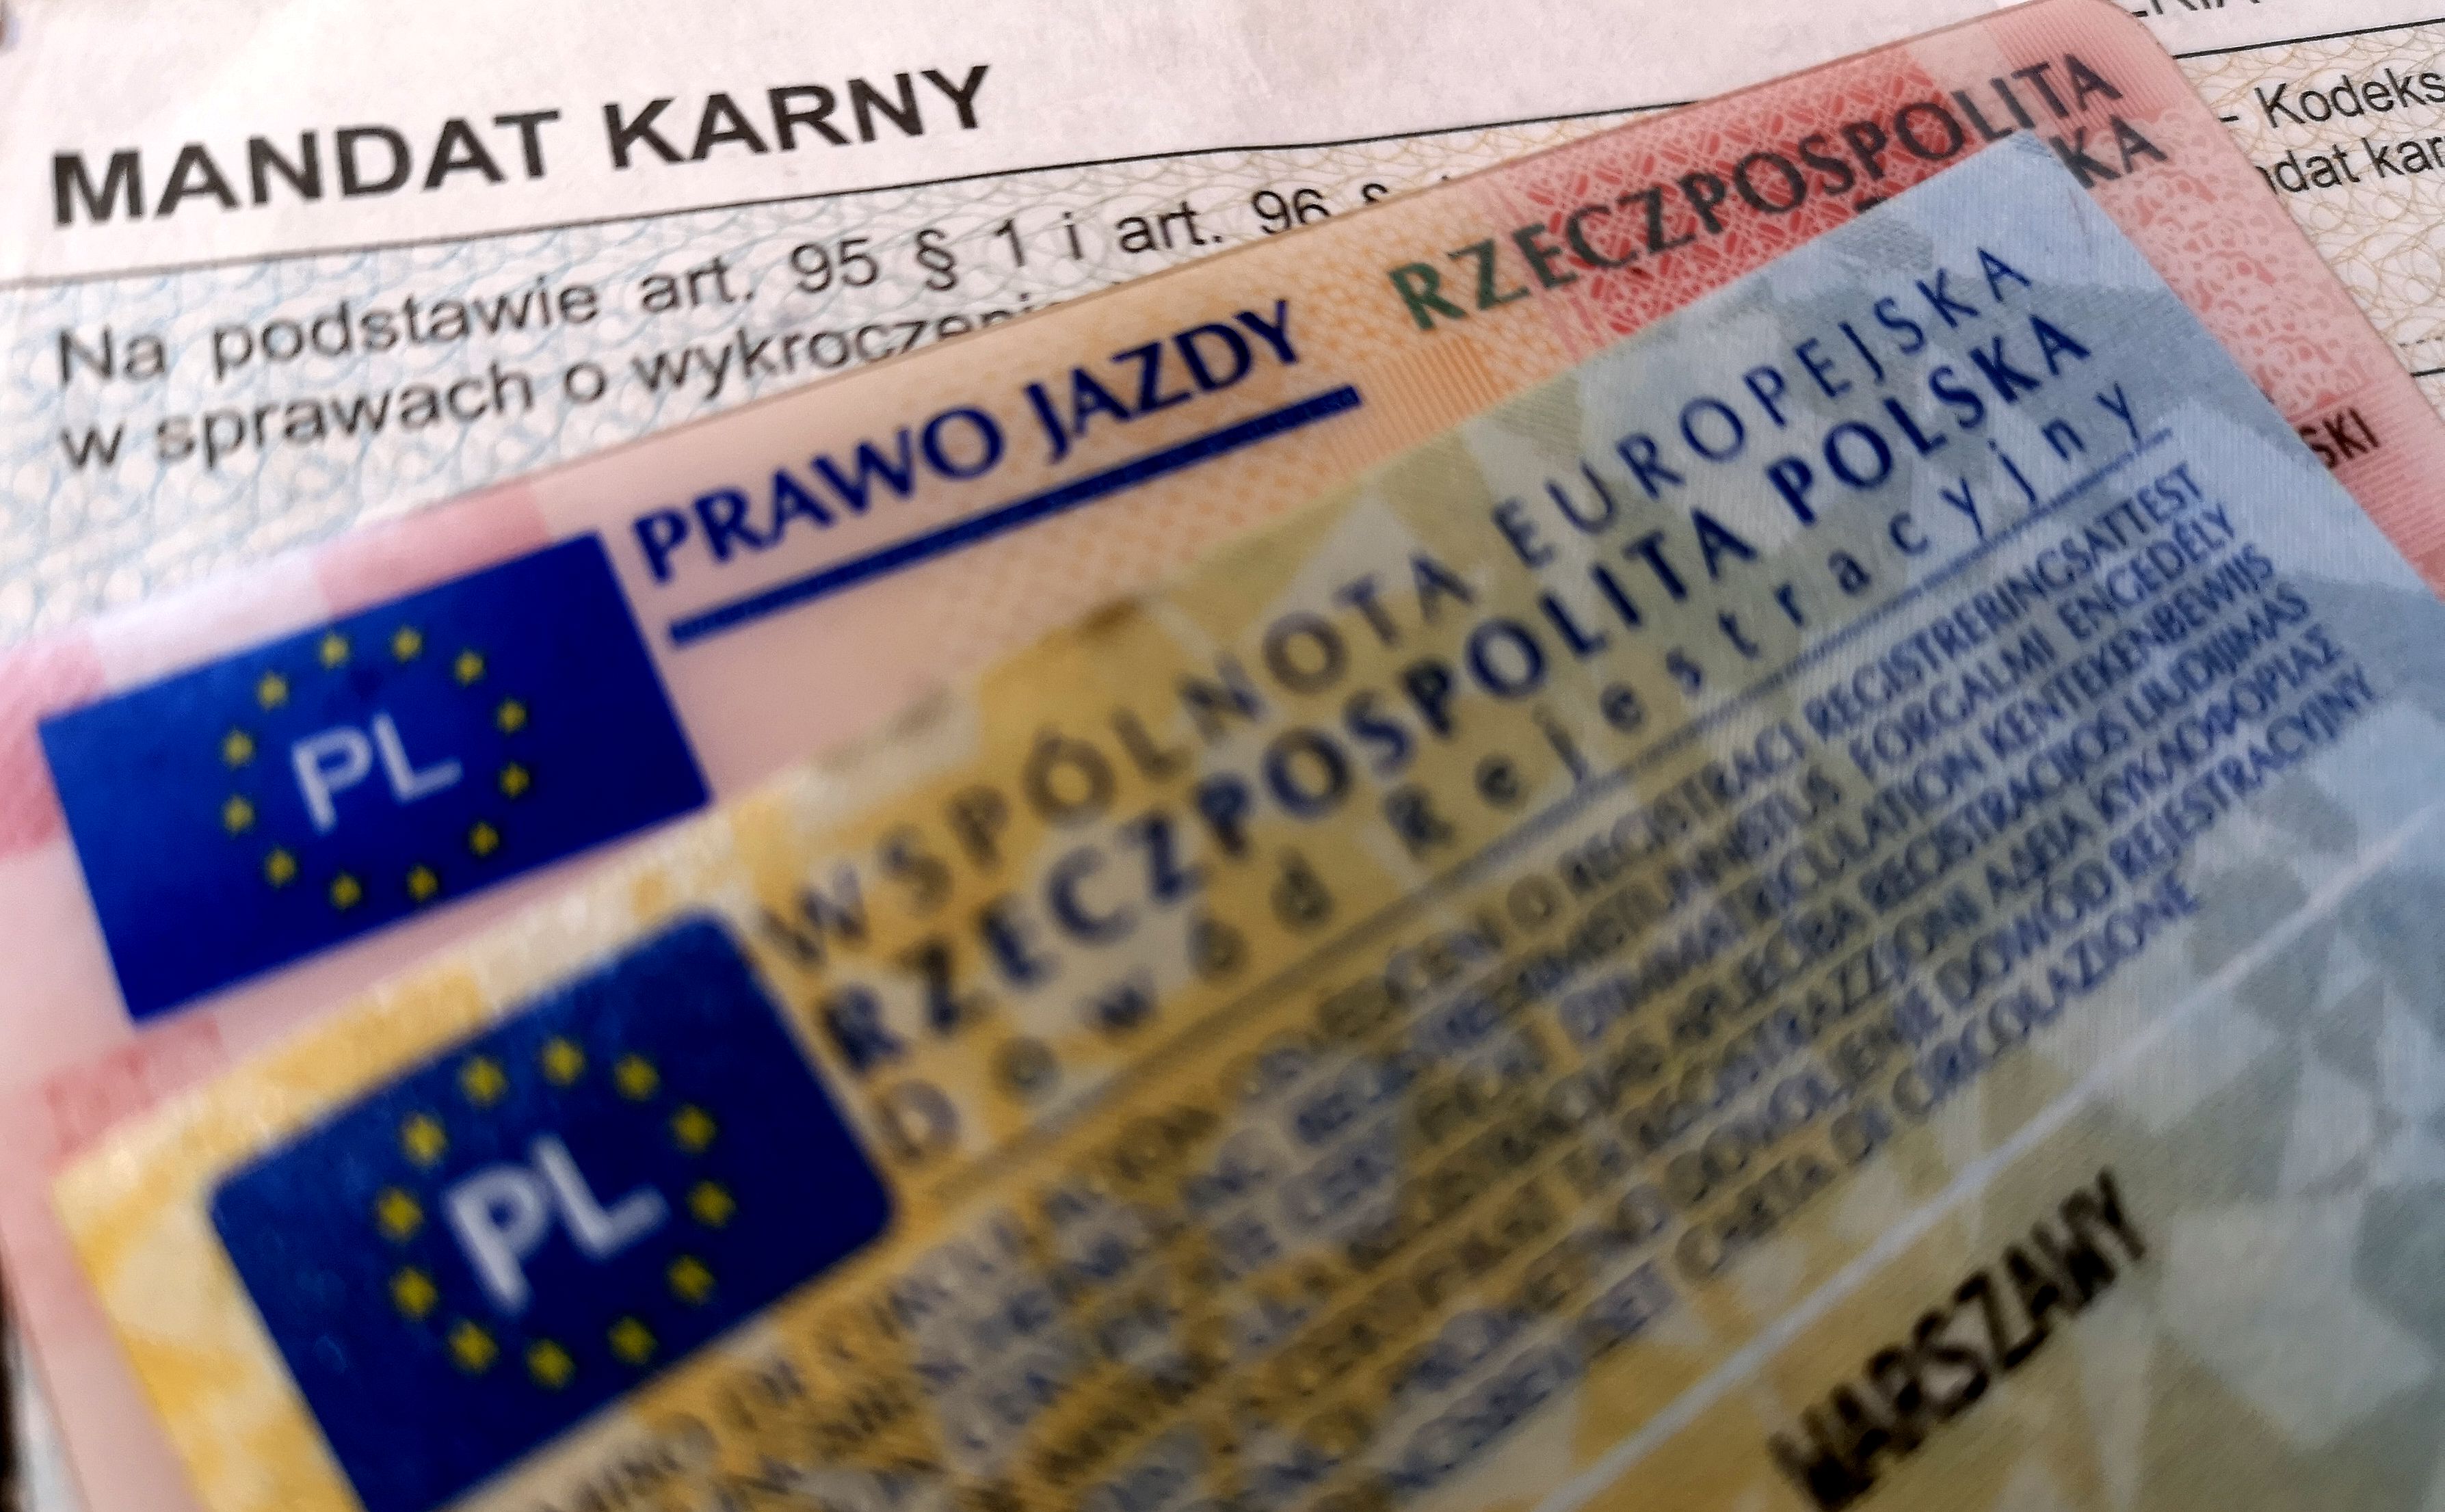 Prawo jazdy zbędne. Rząd ruszył z wielką rewolucją - Dziennik.pl